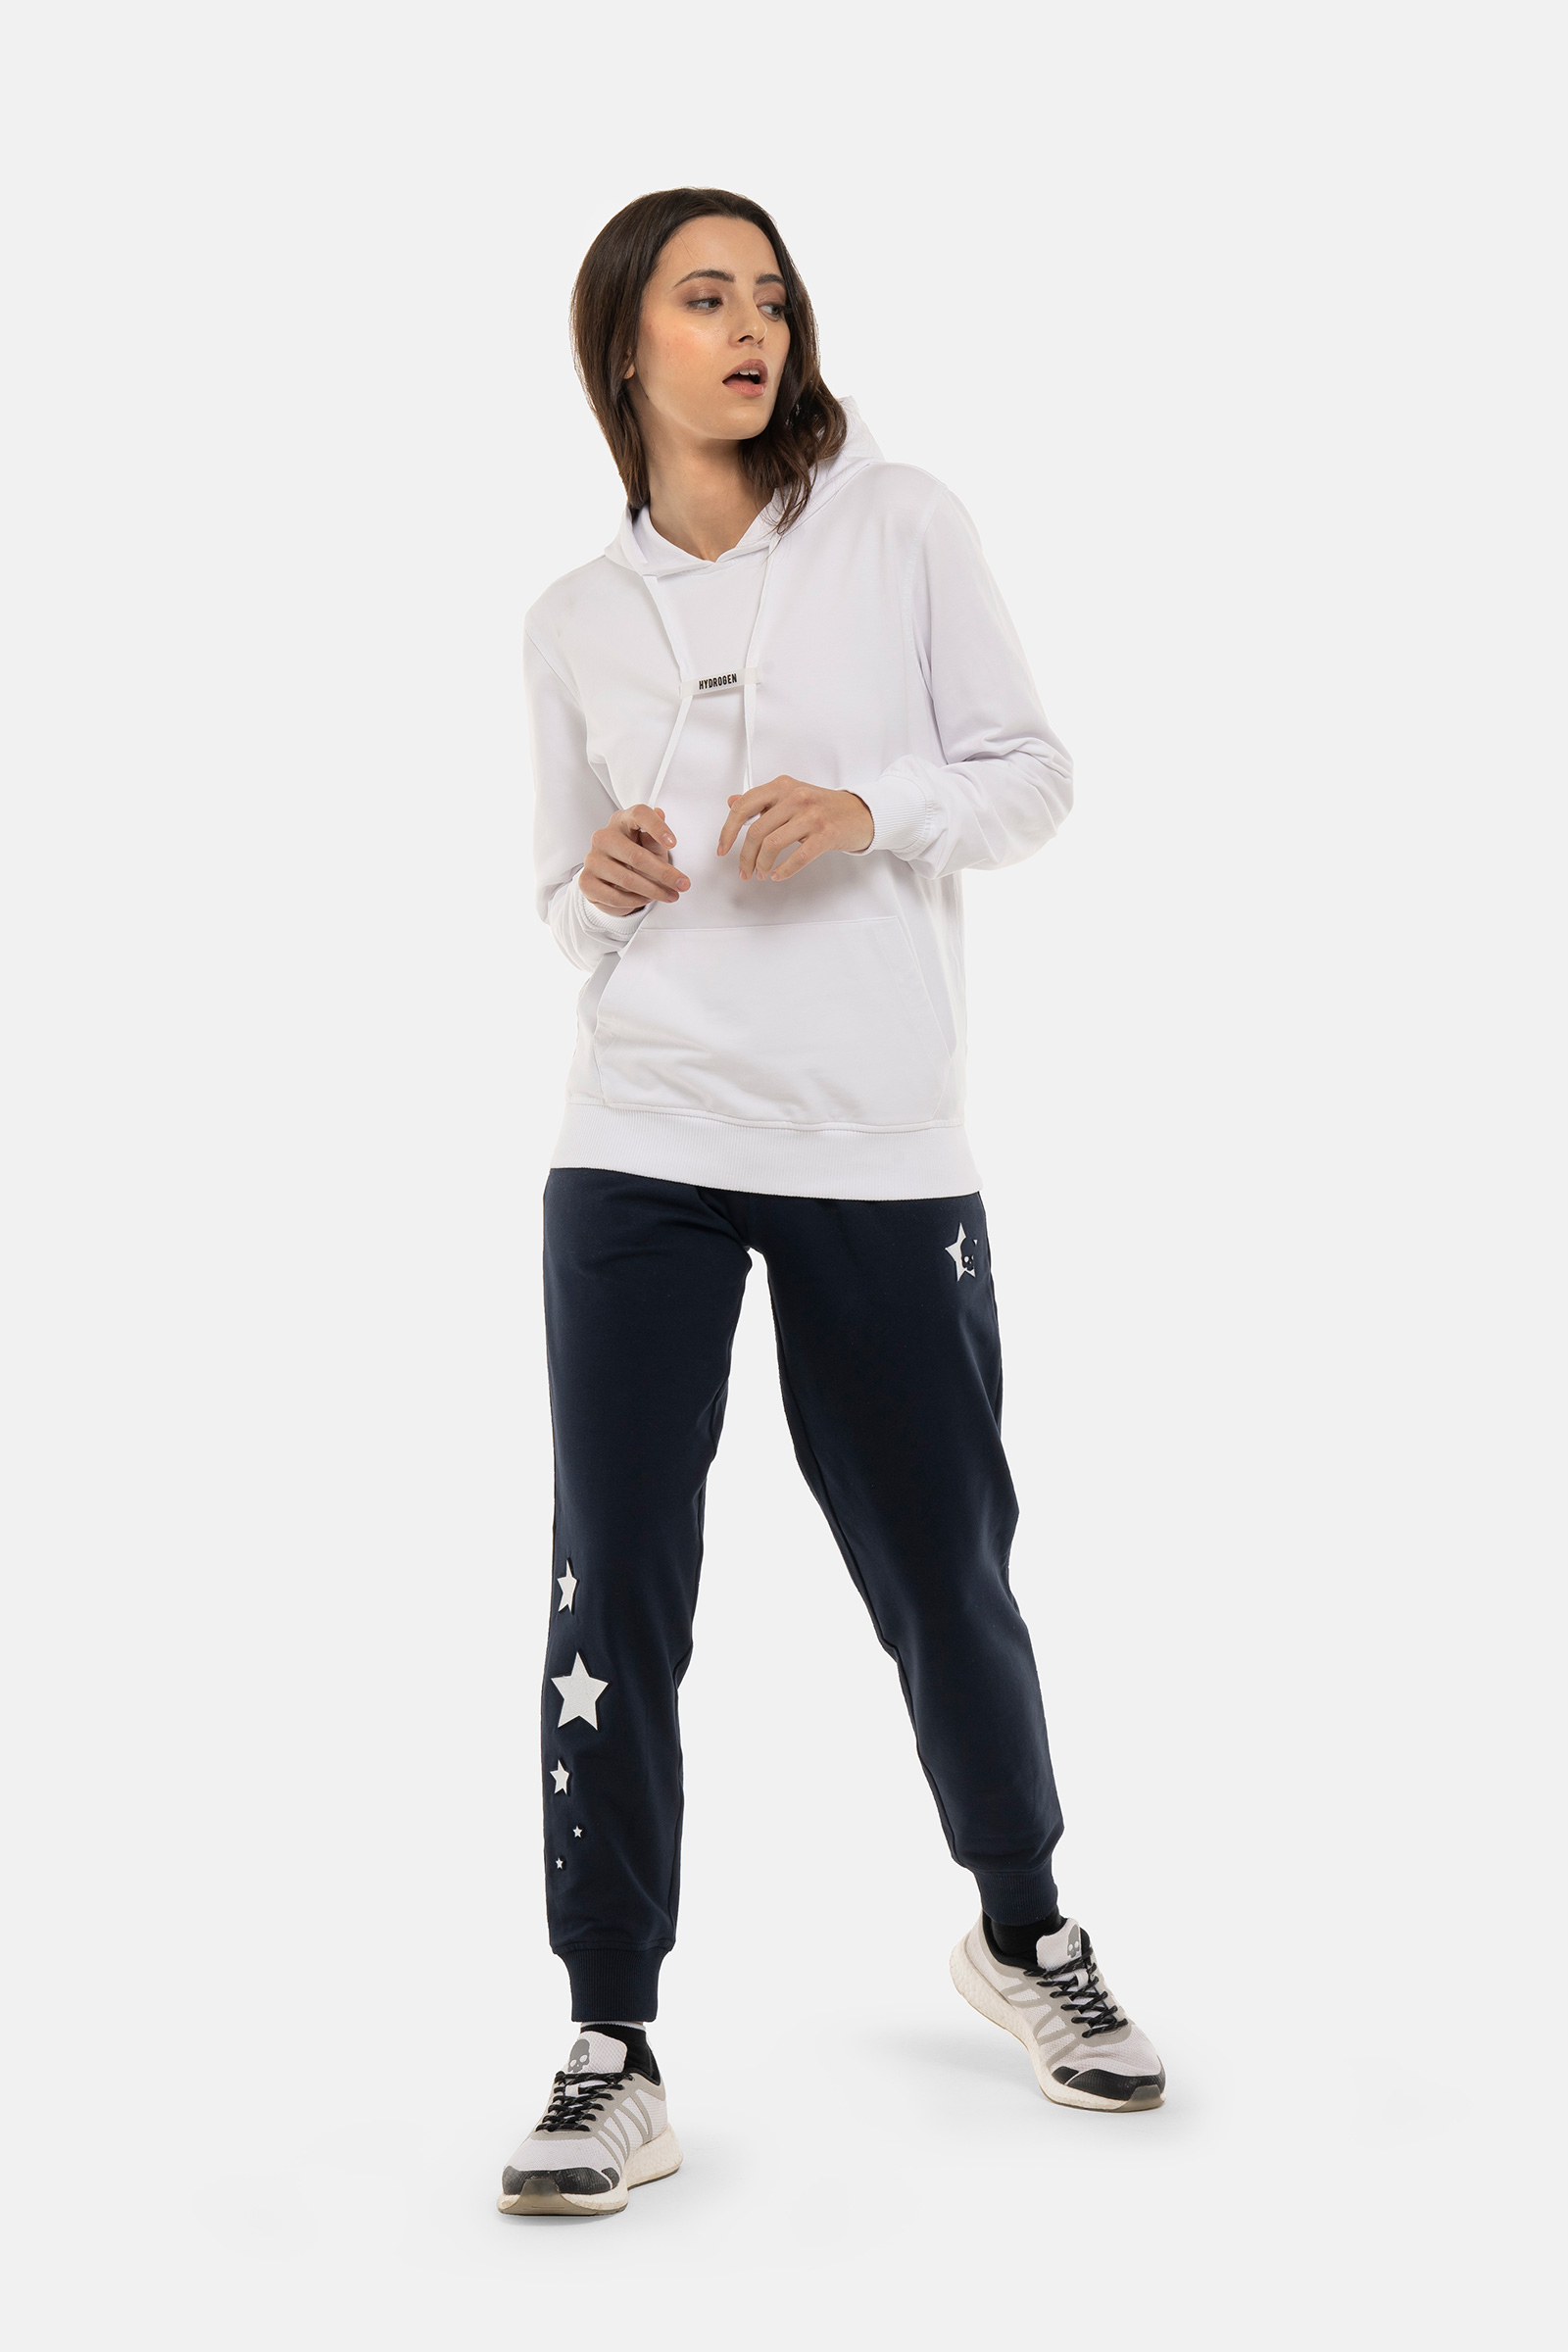 STARS HOODIE - WHITE - Hydrogen - Luxury Sportwear